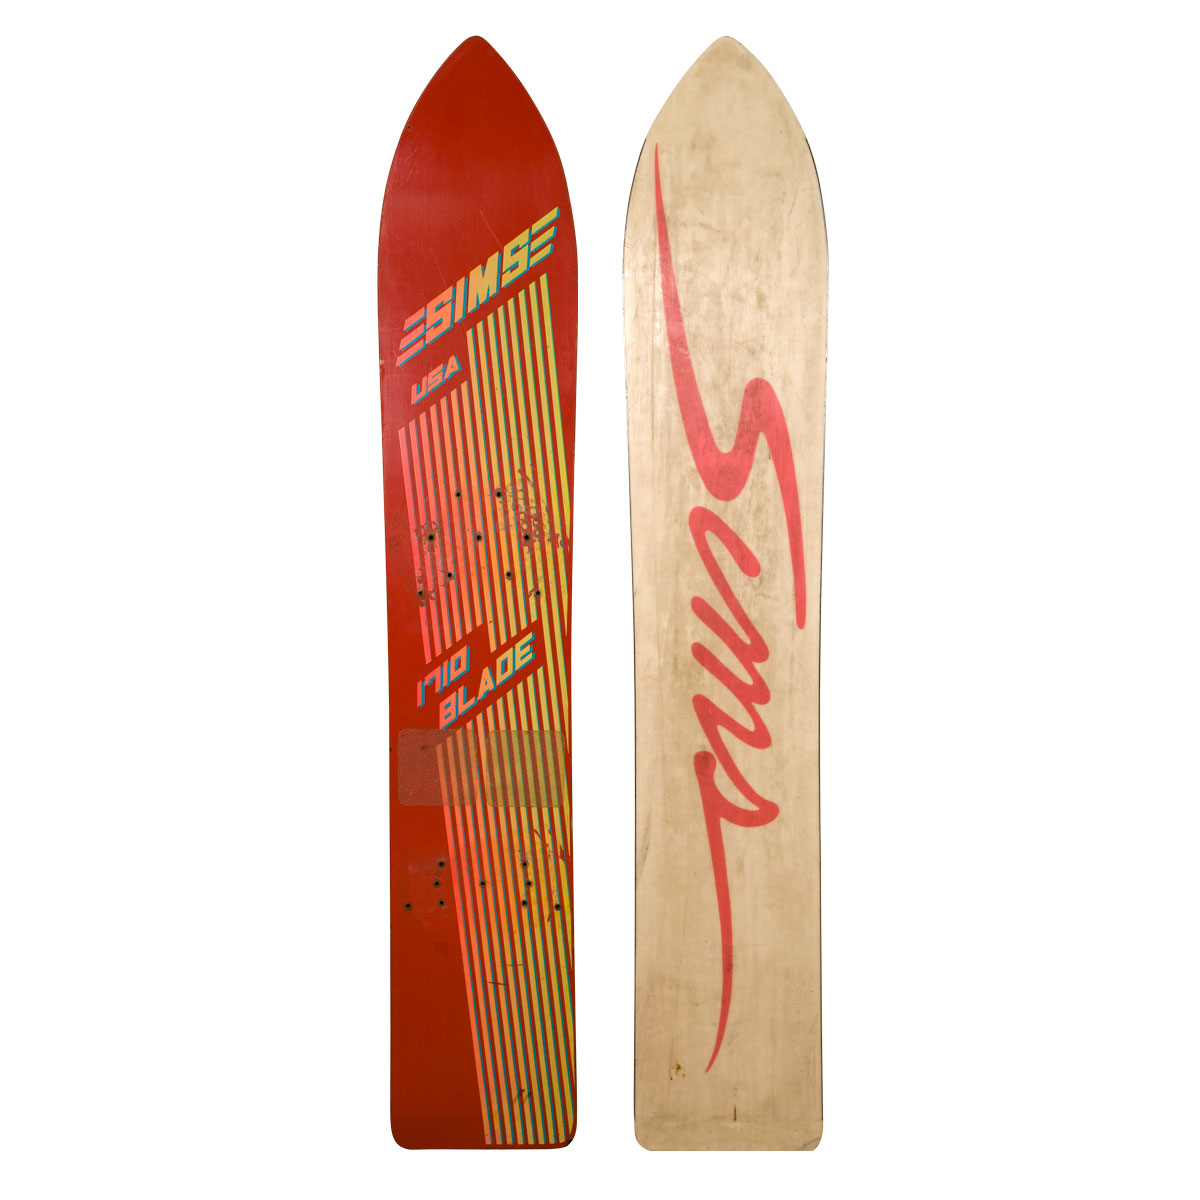 Vintage skateboard Snowboard Sticker Squaw Valley Burton Ski Airwalk NOS sims 1 